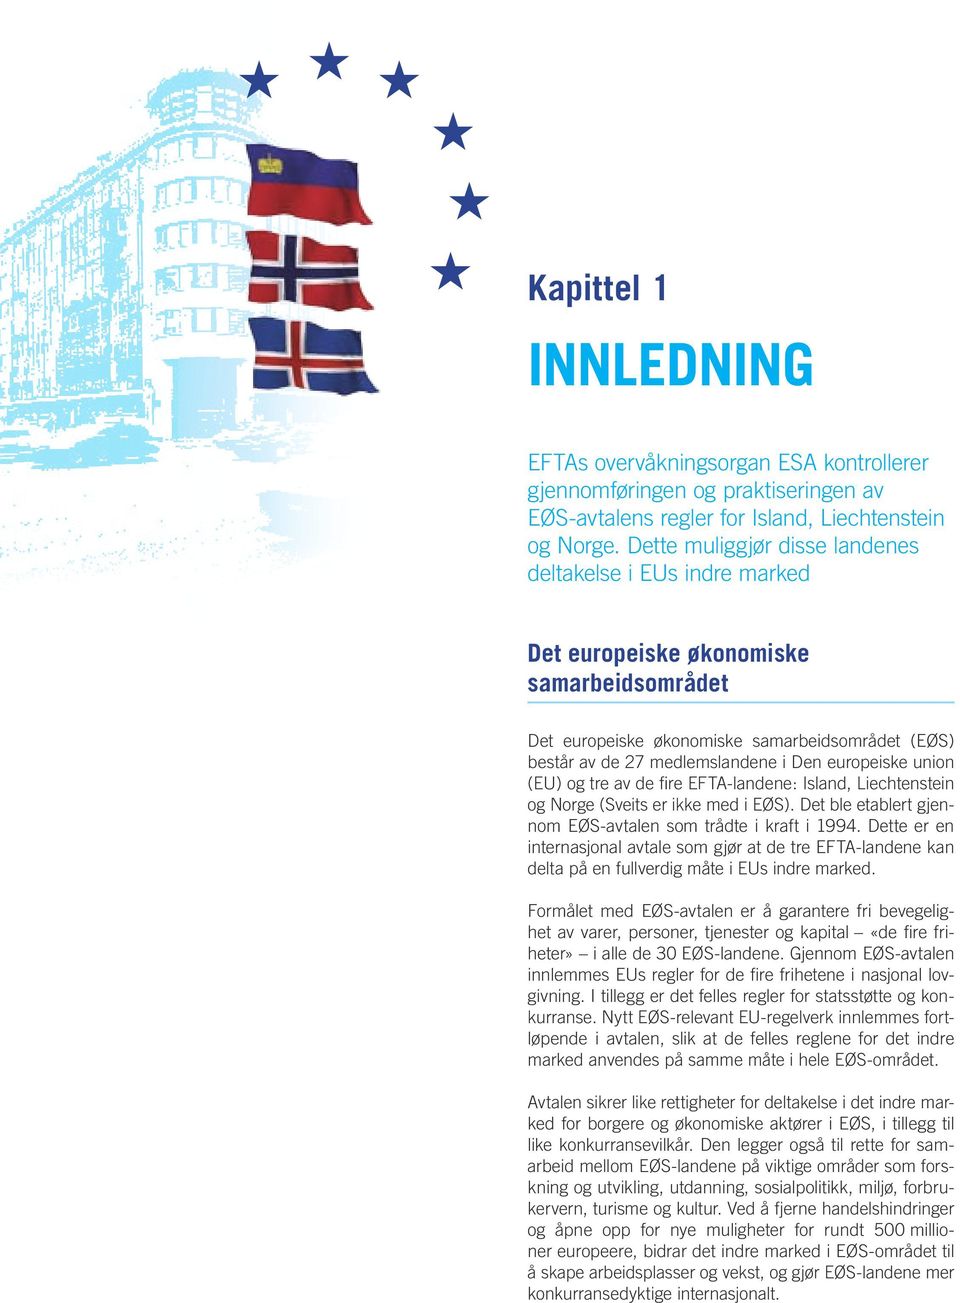 europeiske union (EU) og tre av de fire EFTA landene: Island, Liechtenstein og Norge (Sveits er ikke med i EØS). Det ble etablert gjennom EØS avtalen som trådte i kraft i 1994.